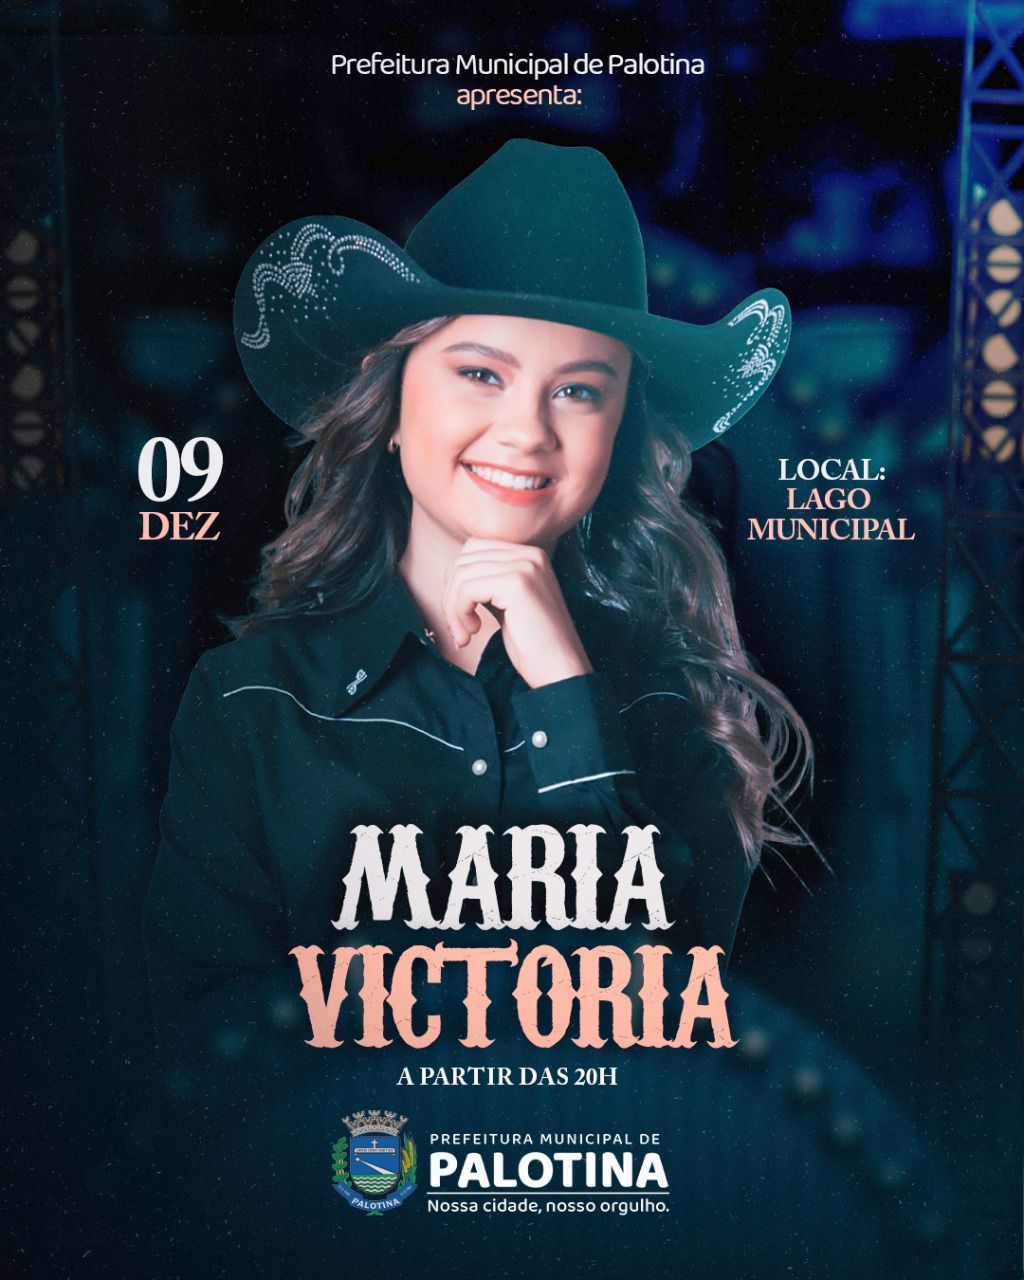 NATAL DE ESPERANÇA E LUZ  Show com Maria Victoria acontecerá nesta sexta feira no Lago Municipal